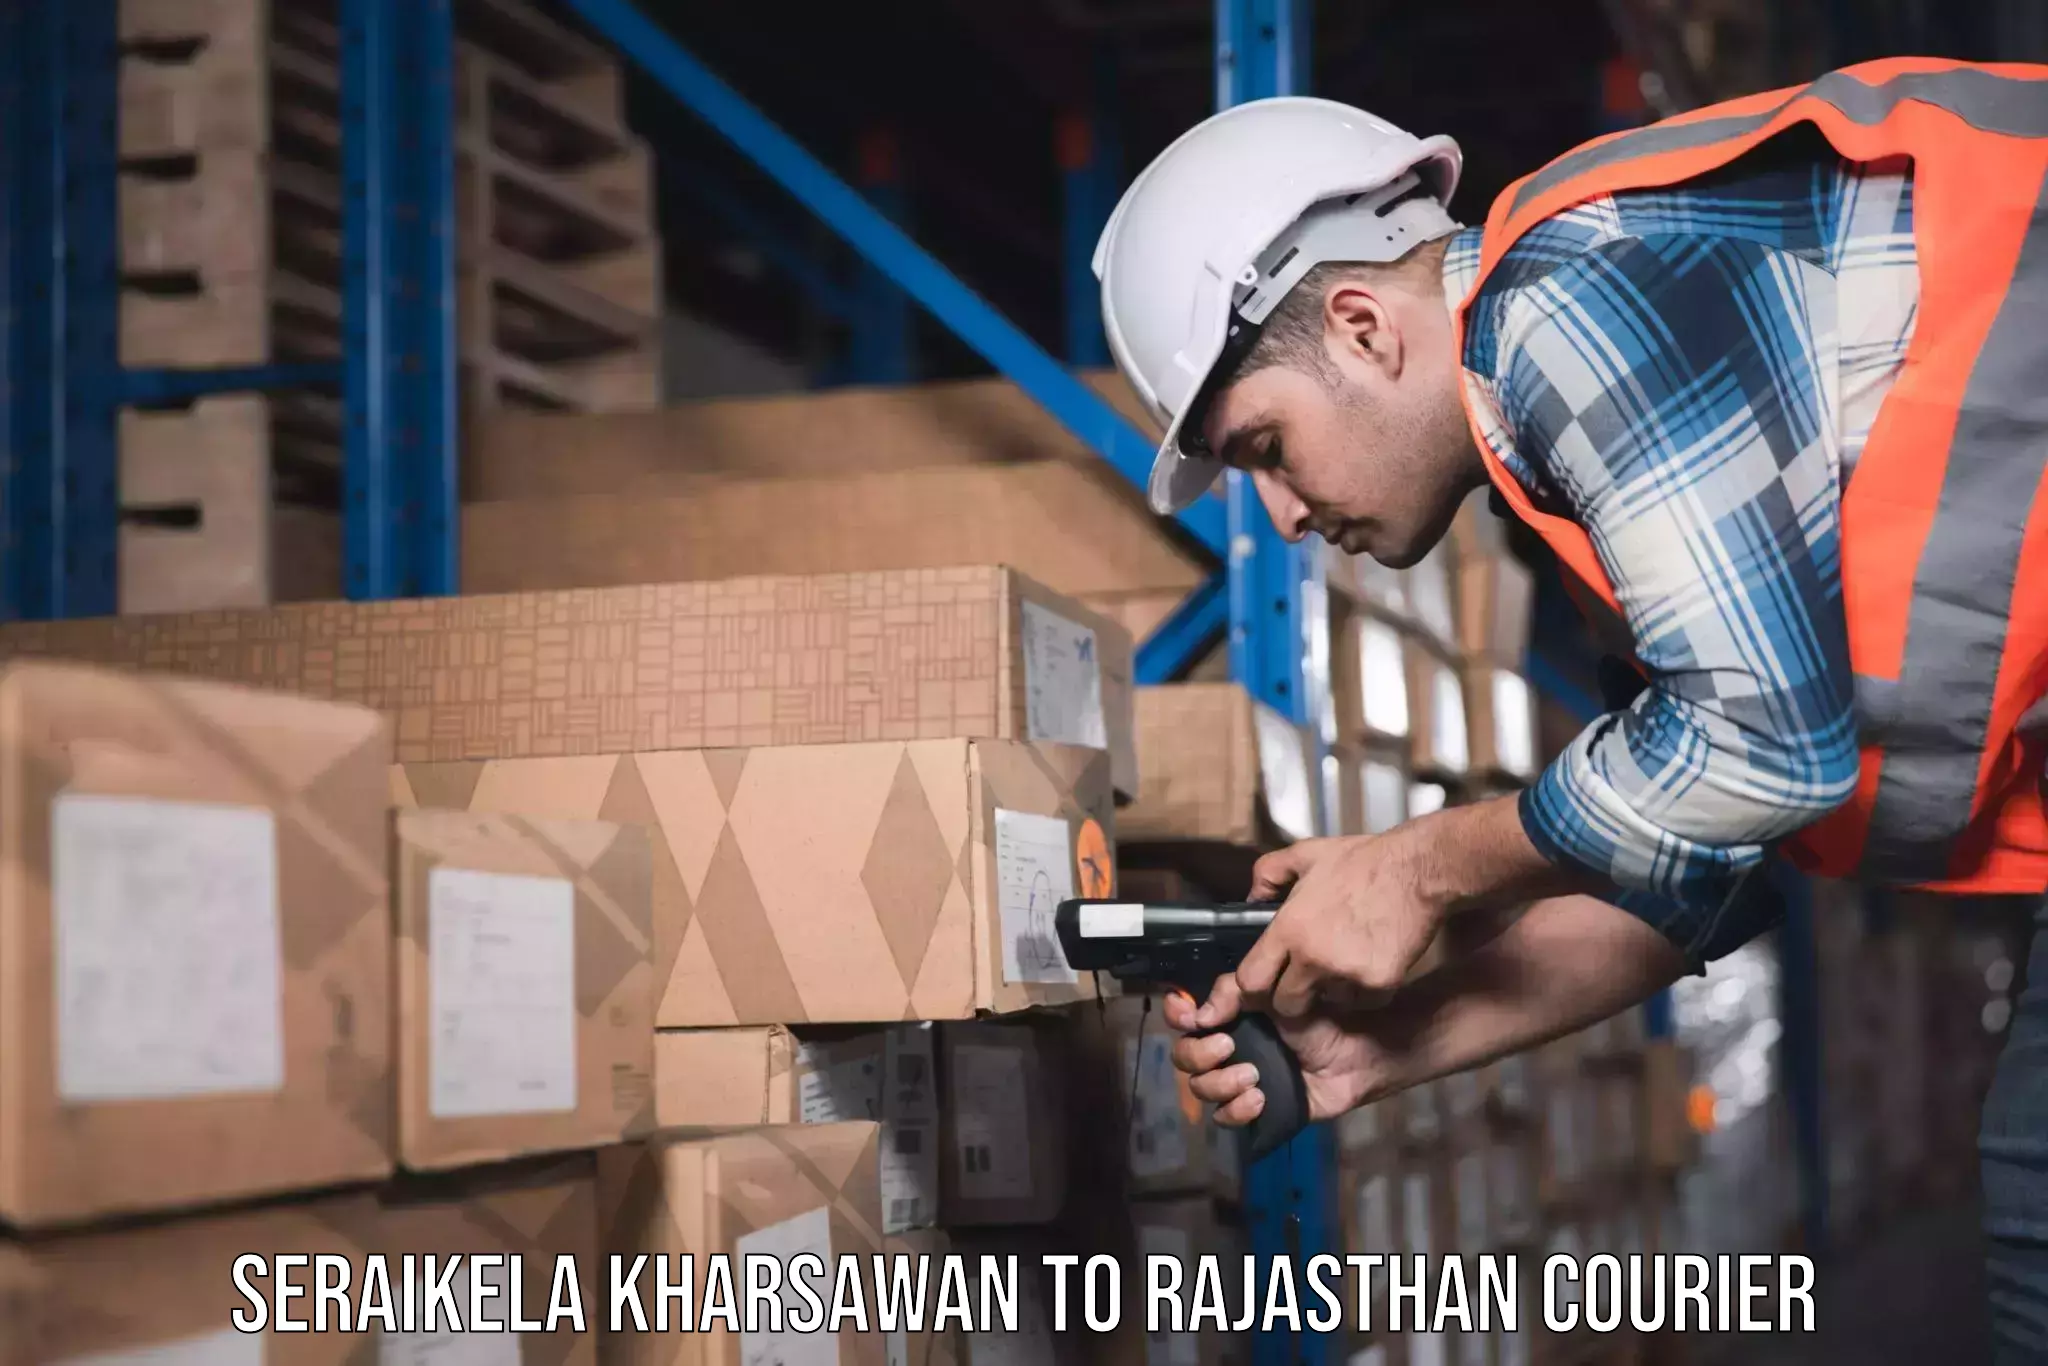 Professional moving company Seraikela Kharsawan to Renwal